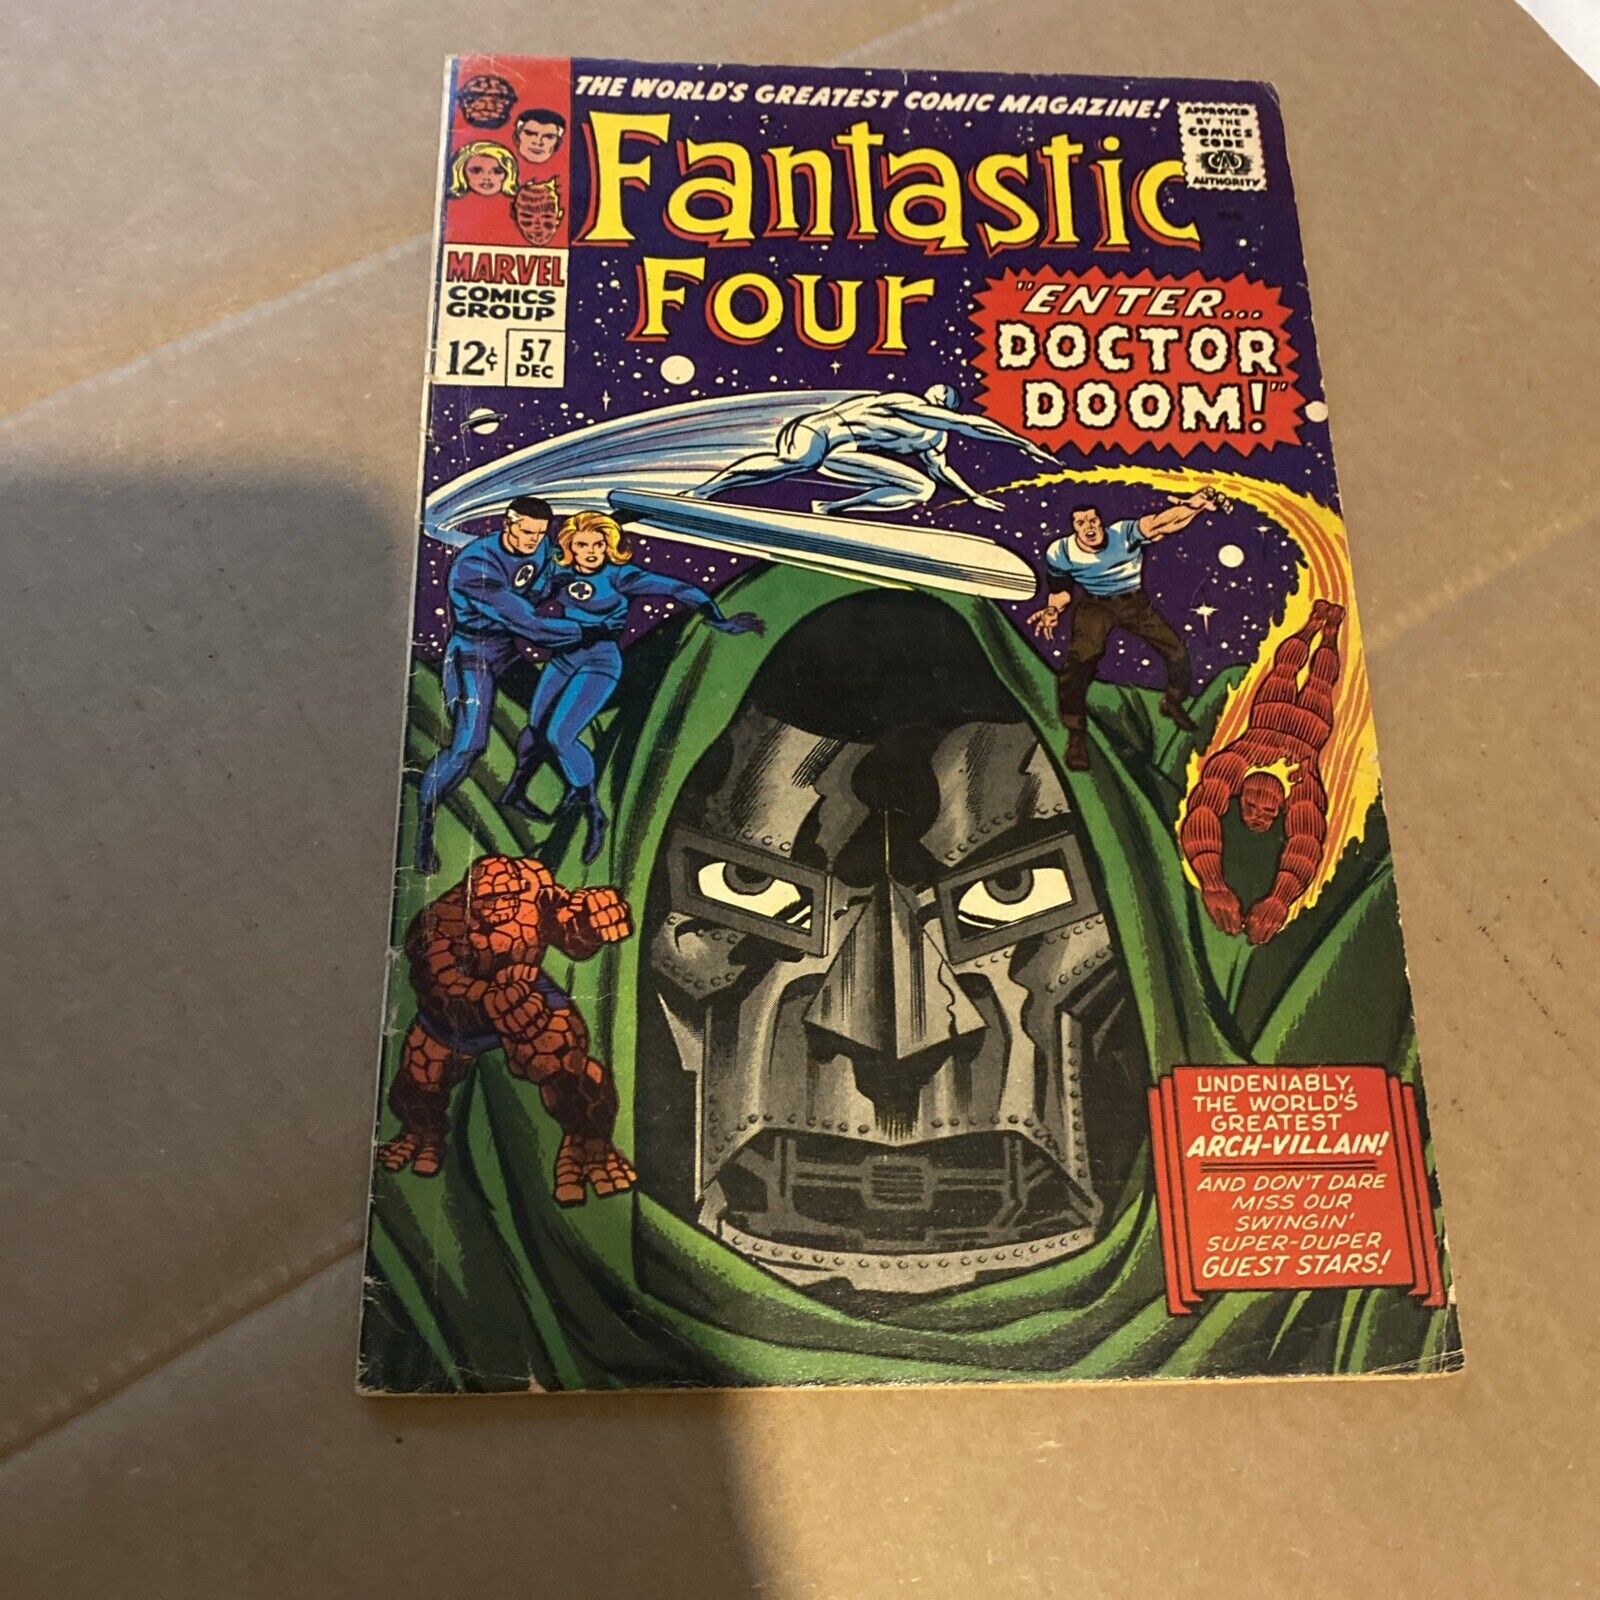 Fantastic Four #57 VG+ - FN Doctor Doom Silver Surfer Appearance Marvel 1966